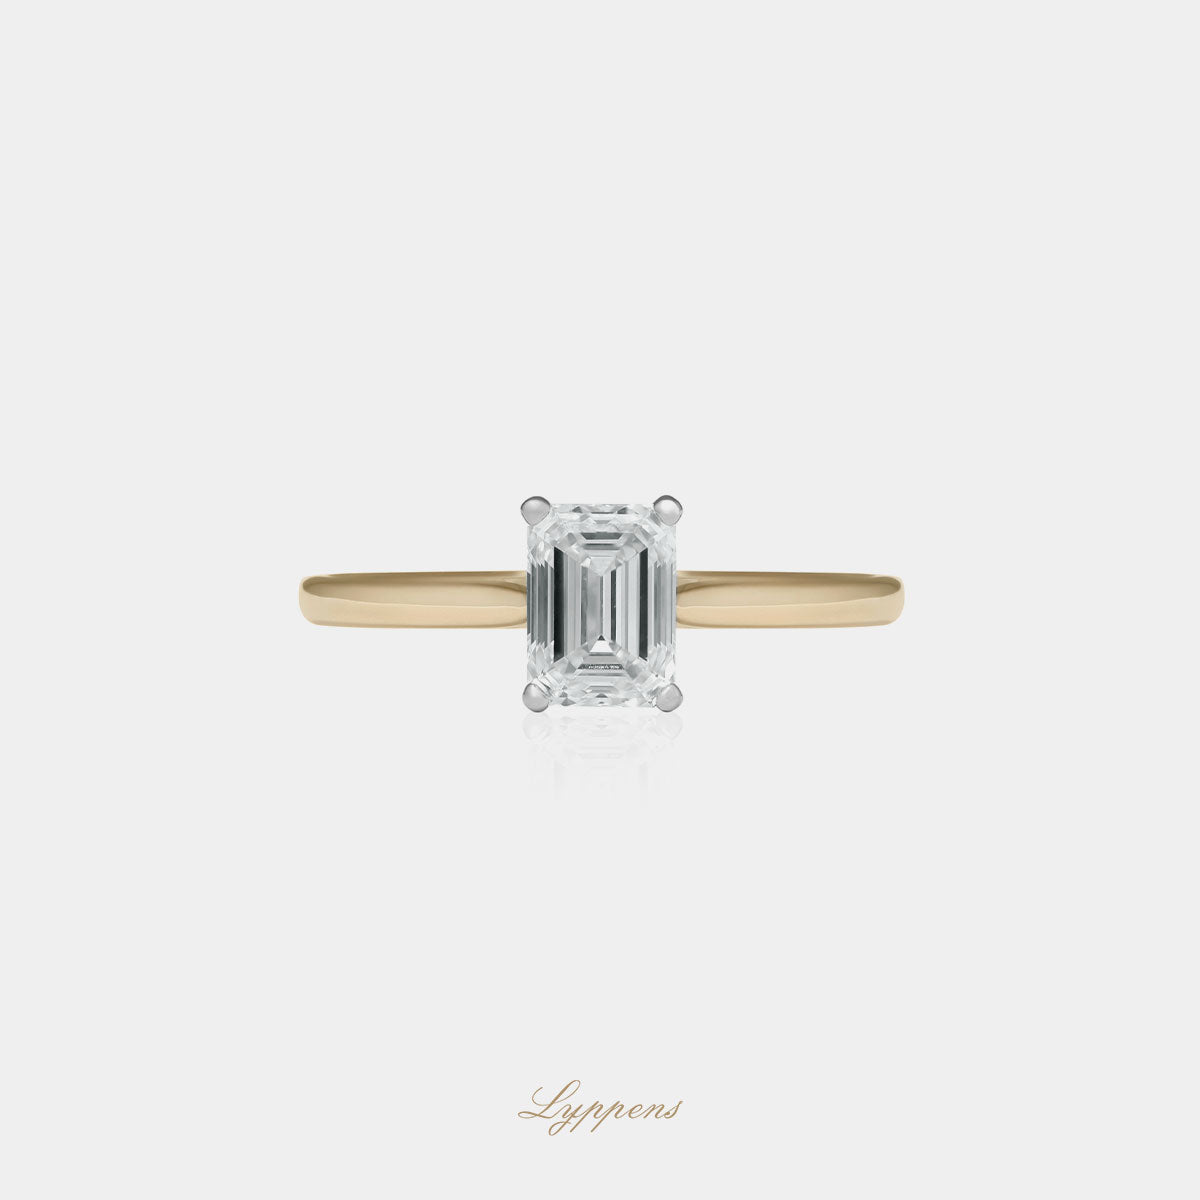 Geel- met witgouden solitair verlovingsring, deze ring is in het midden gezet met emerald geslepen diamant.